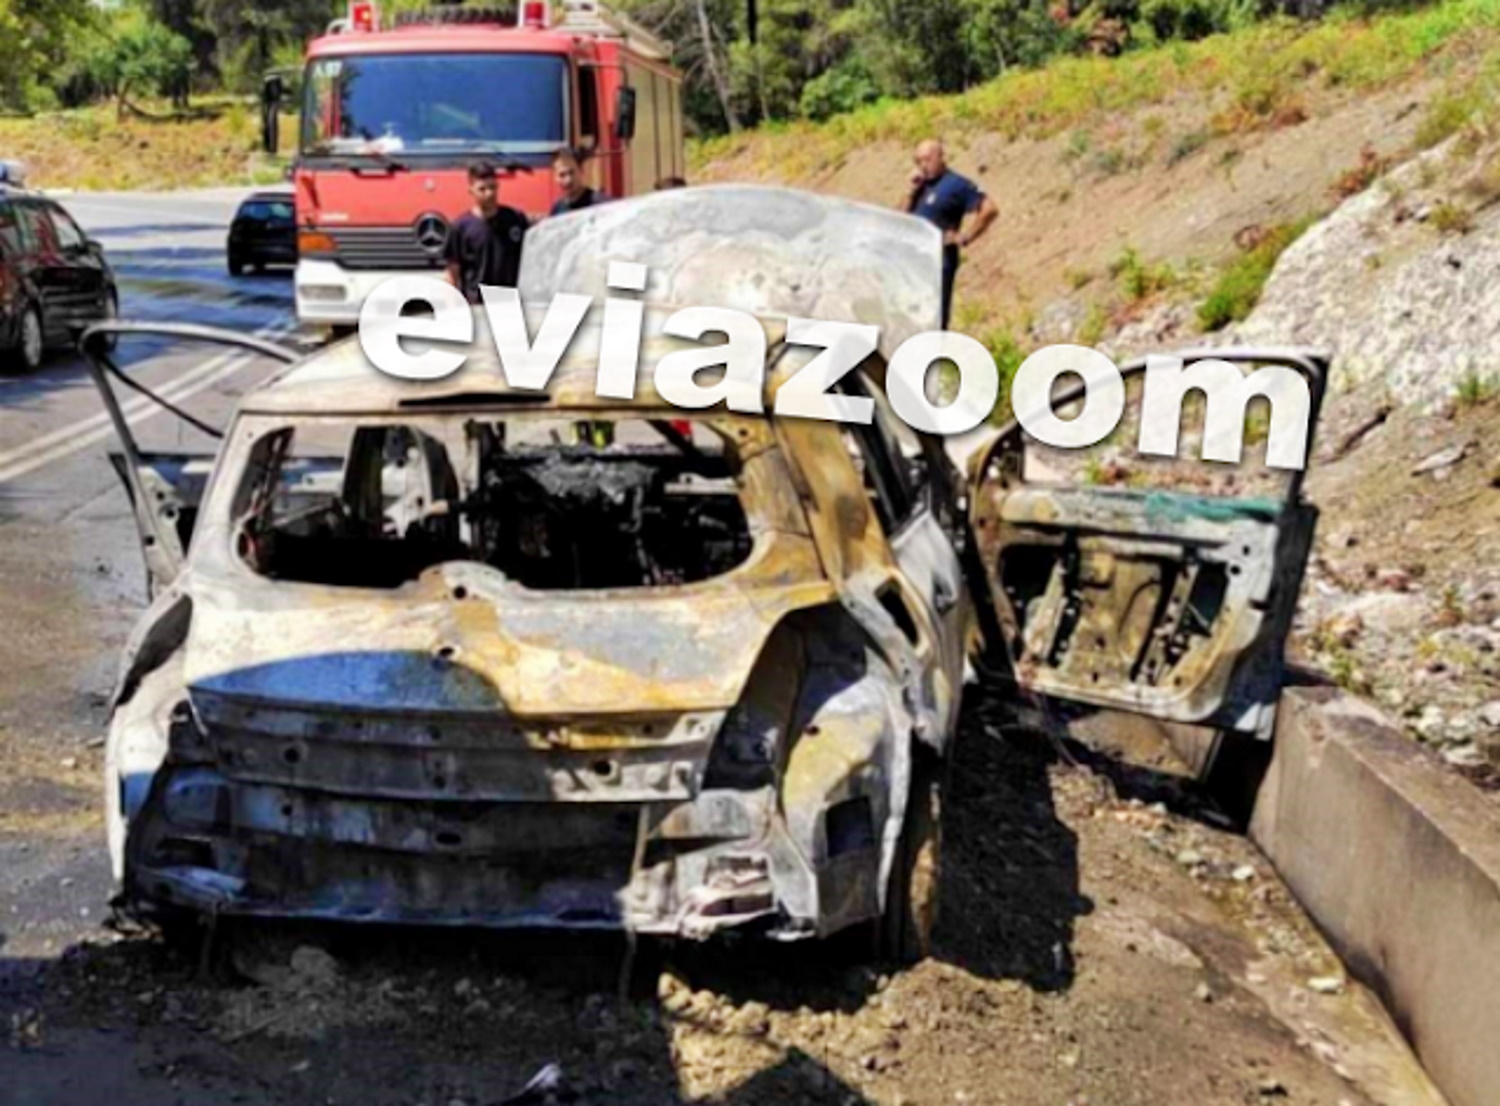 Εύβοια: Αυτοκίνητο πήρε φωτιά εν κινήσει – Μέσα βρίσκονταν πατέρας και 2 παιδιά